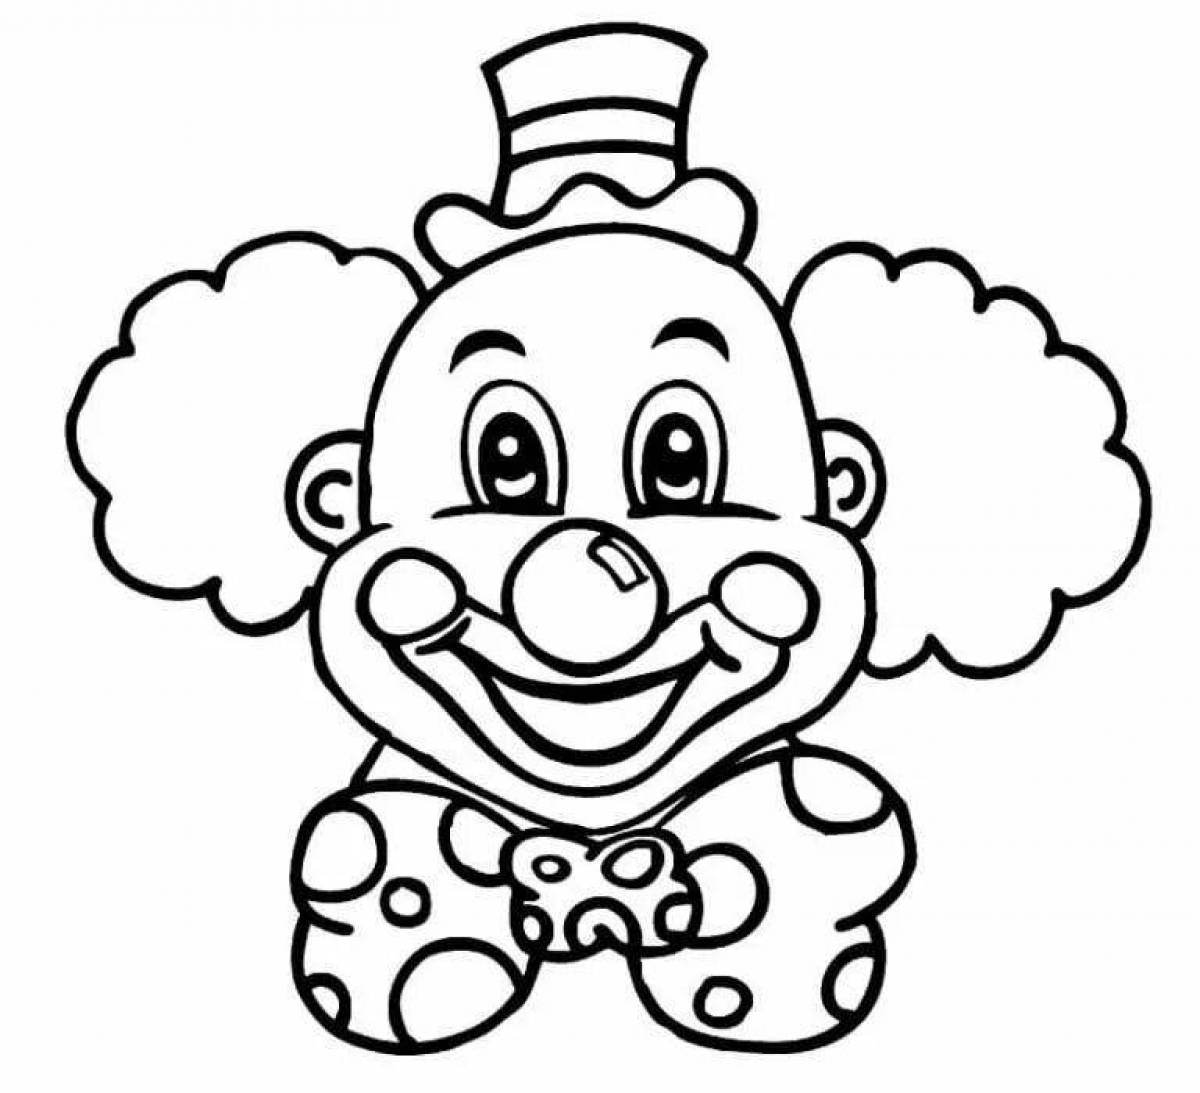 Странная раскраска лица клоуна